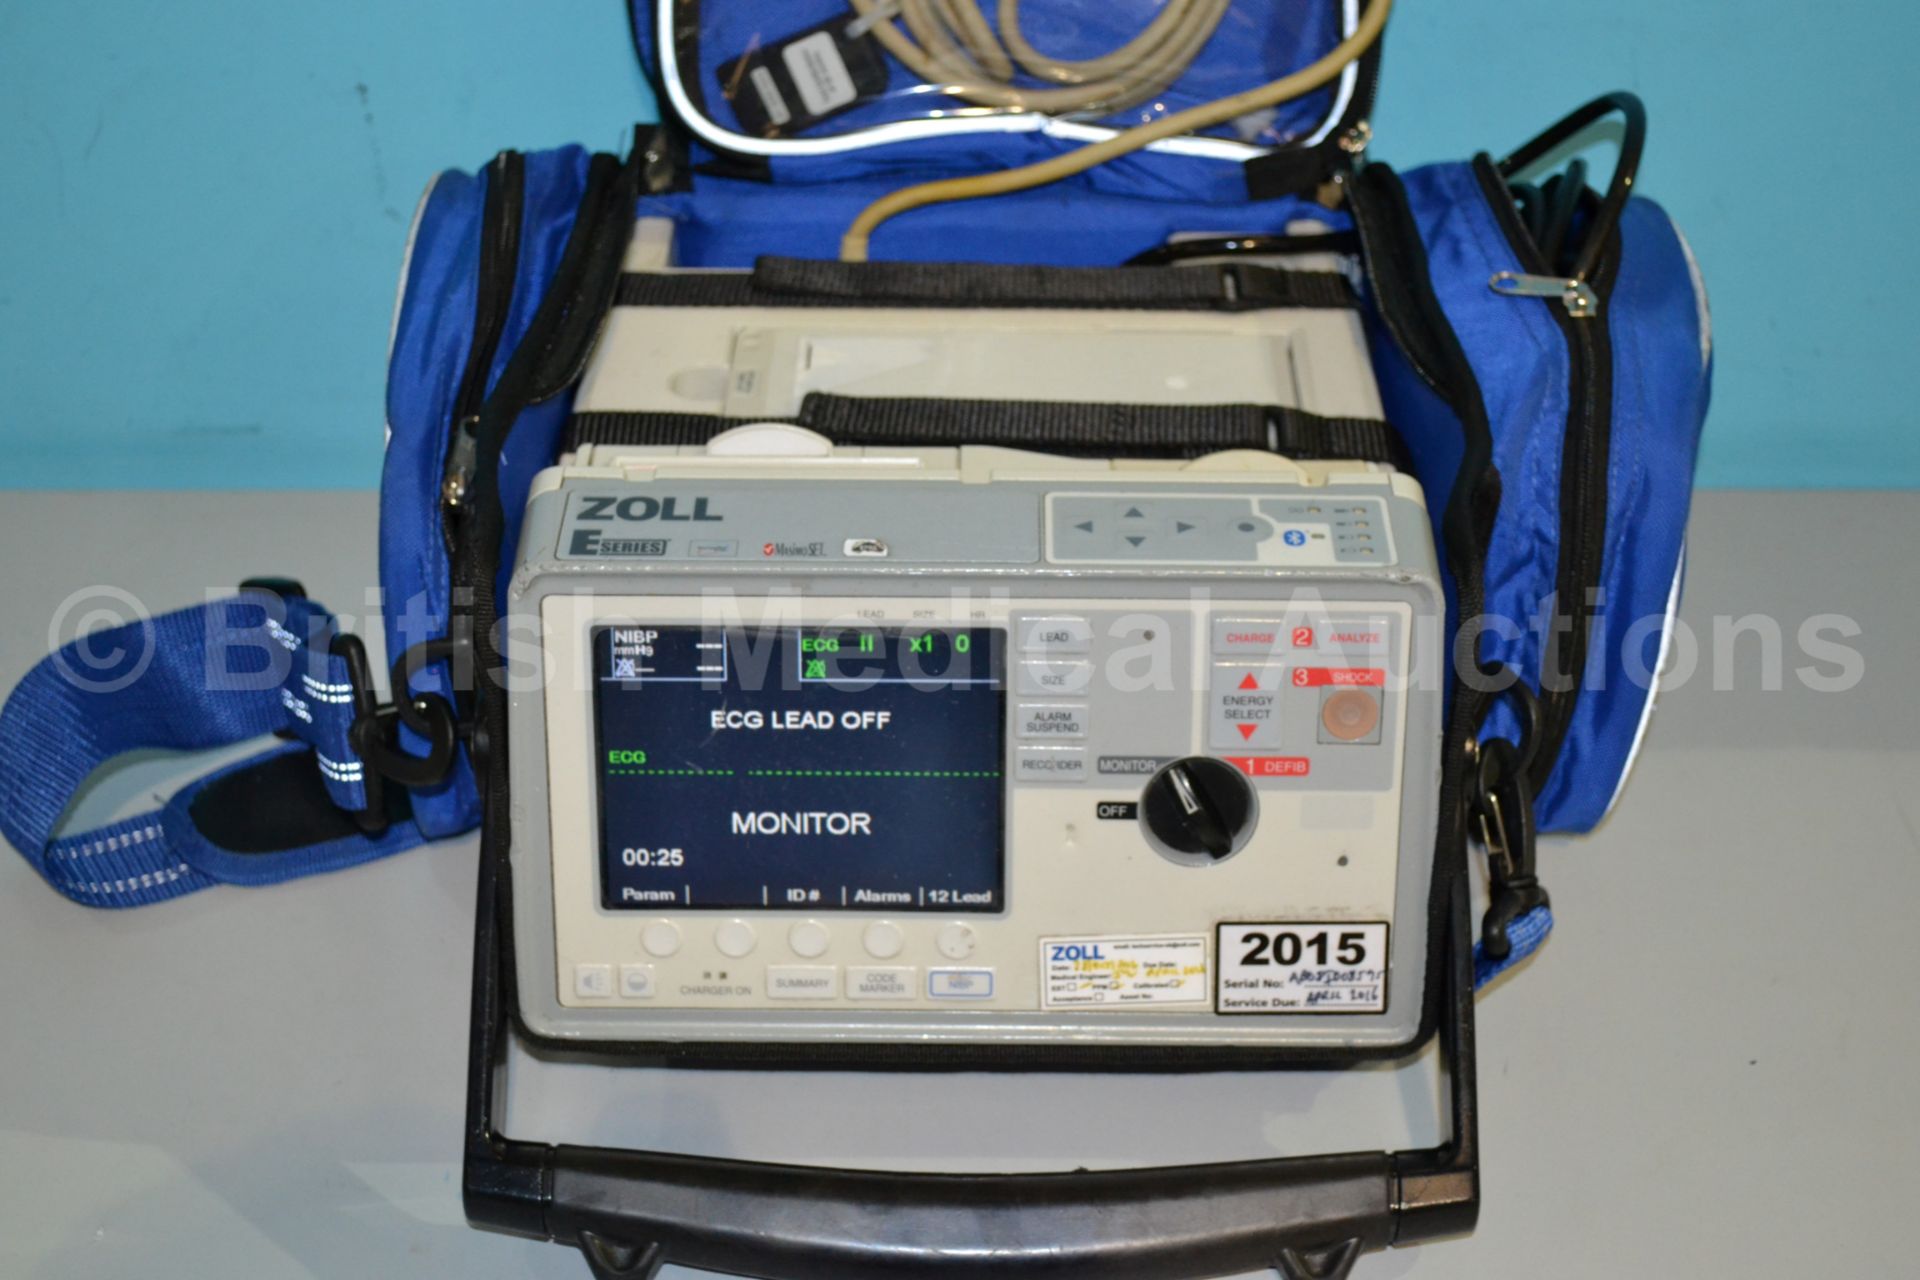 Zoll E Series Defibrillator / Monitor with NIBP, C